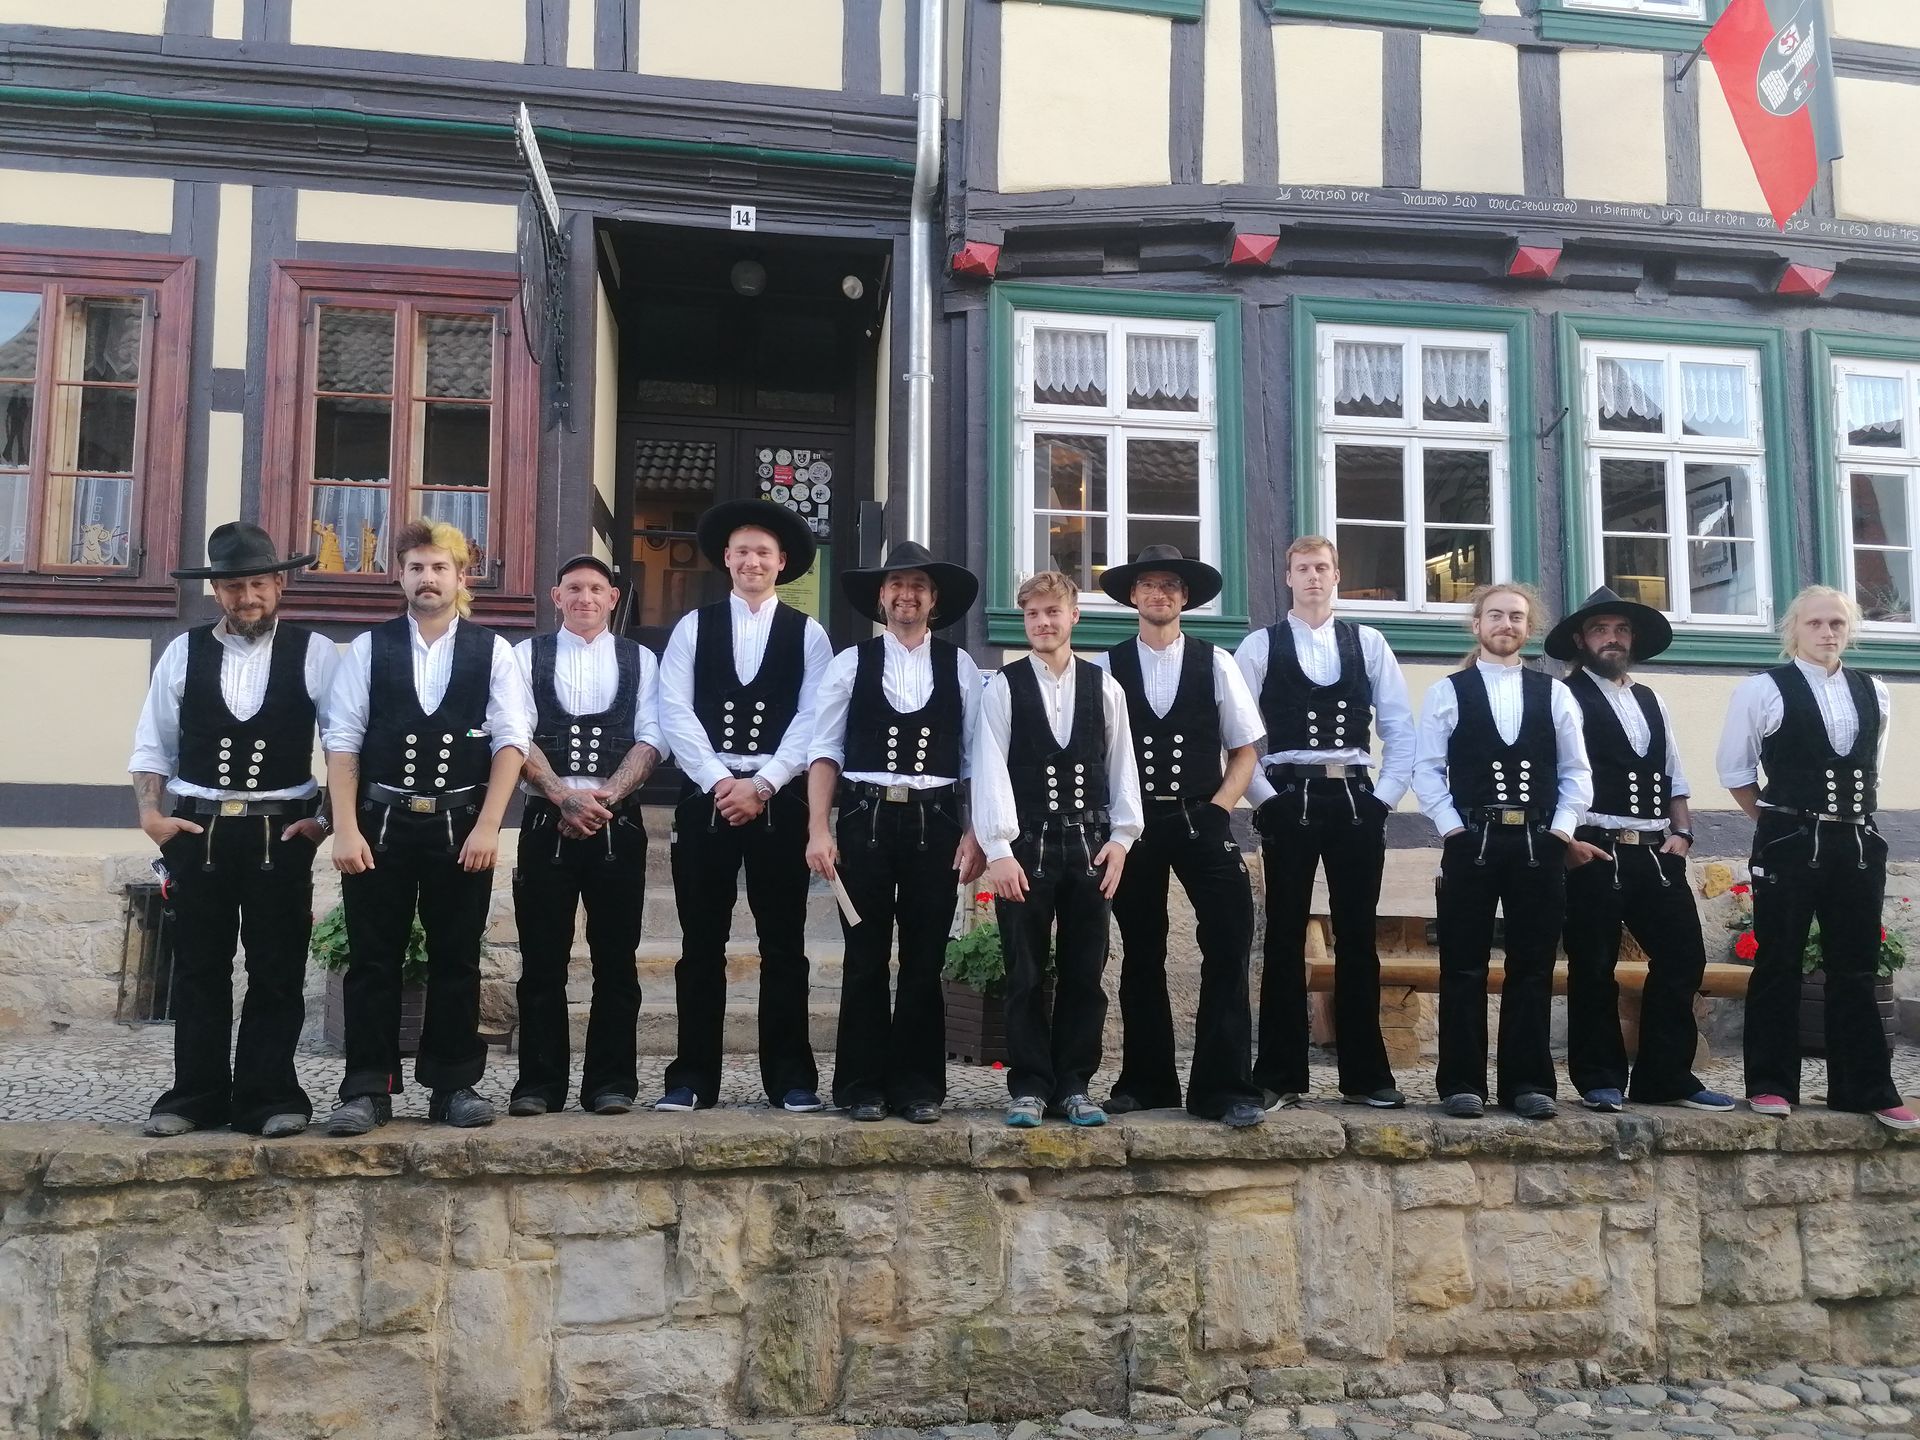 Gruppe von elf jungen Zimmermännern auf der Walz in Zunftkleidung auf einer Mauer vor einem Holzhaus